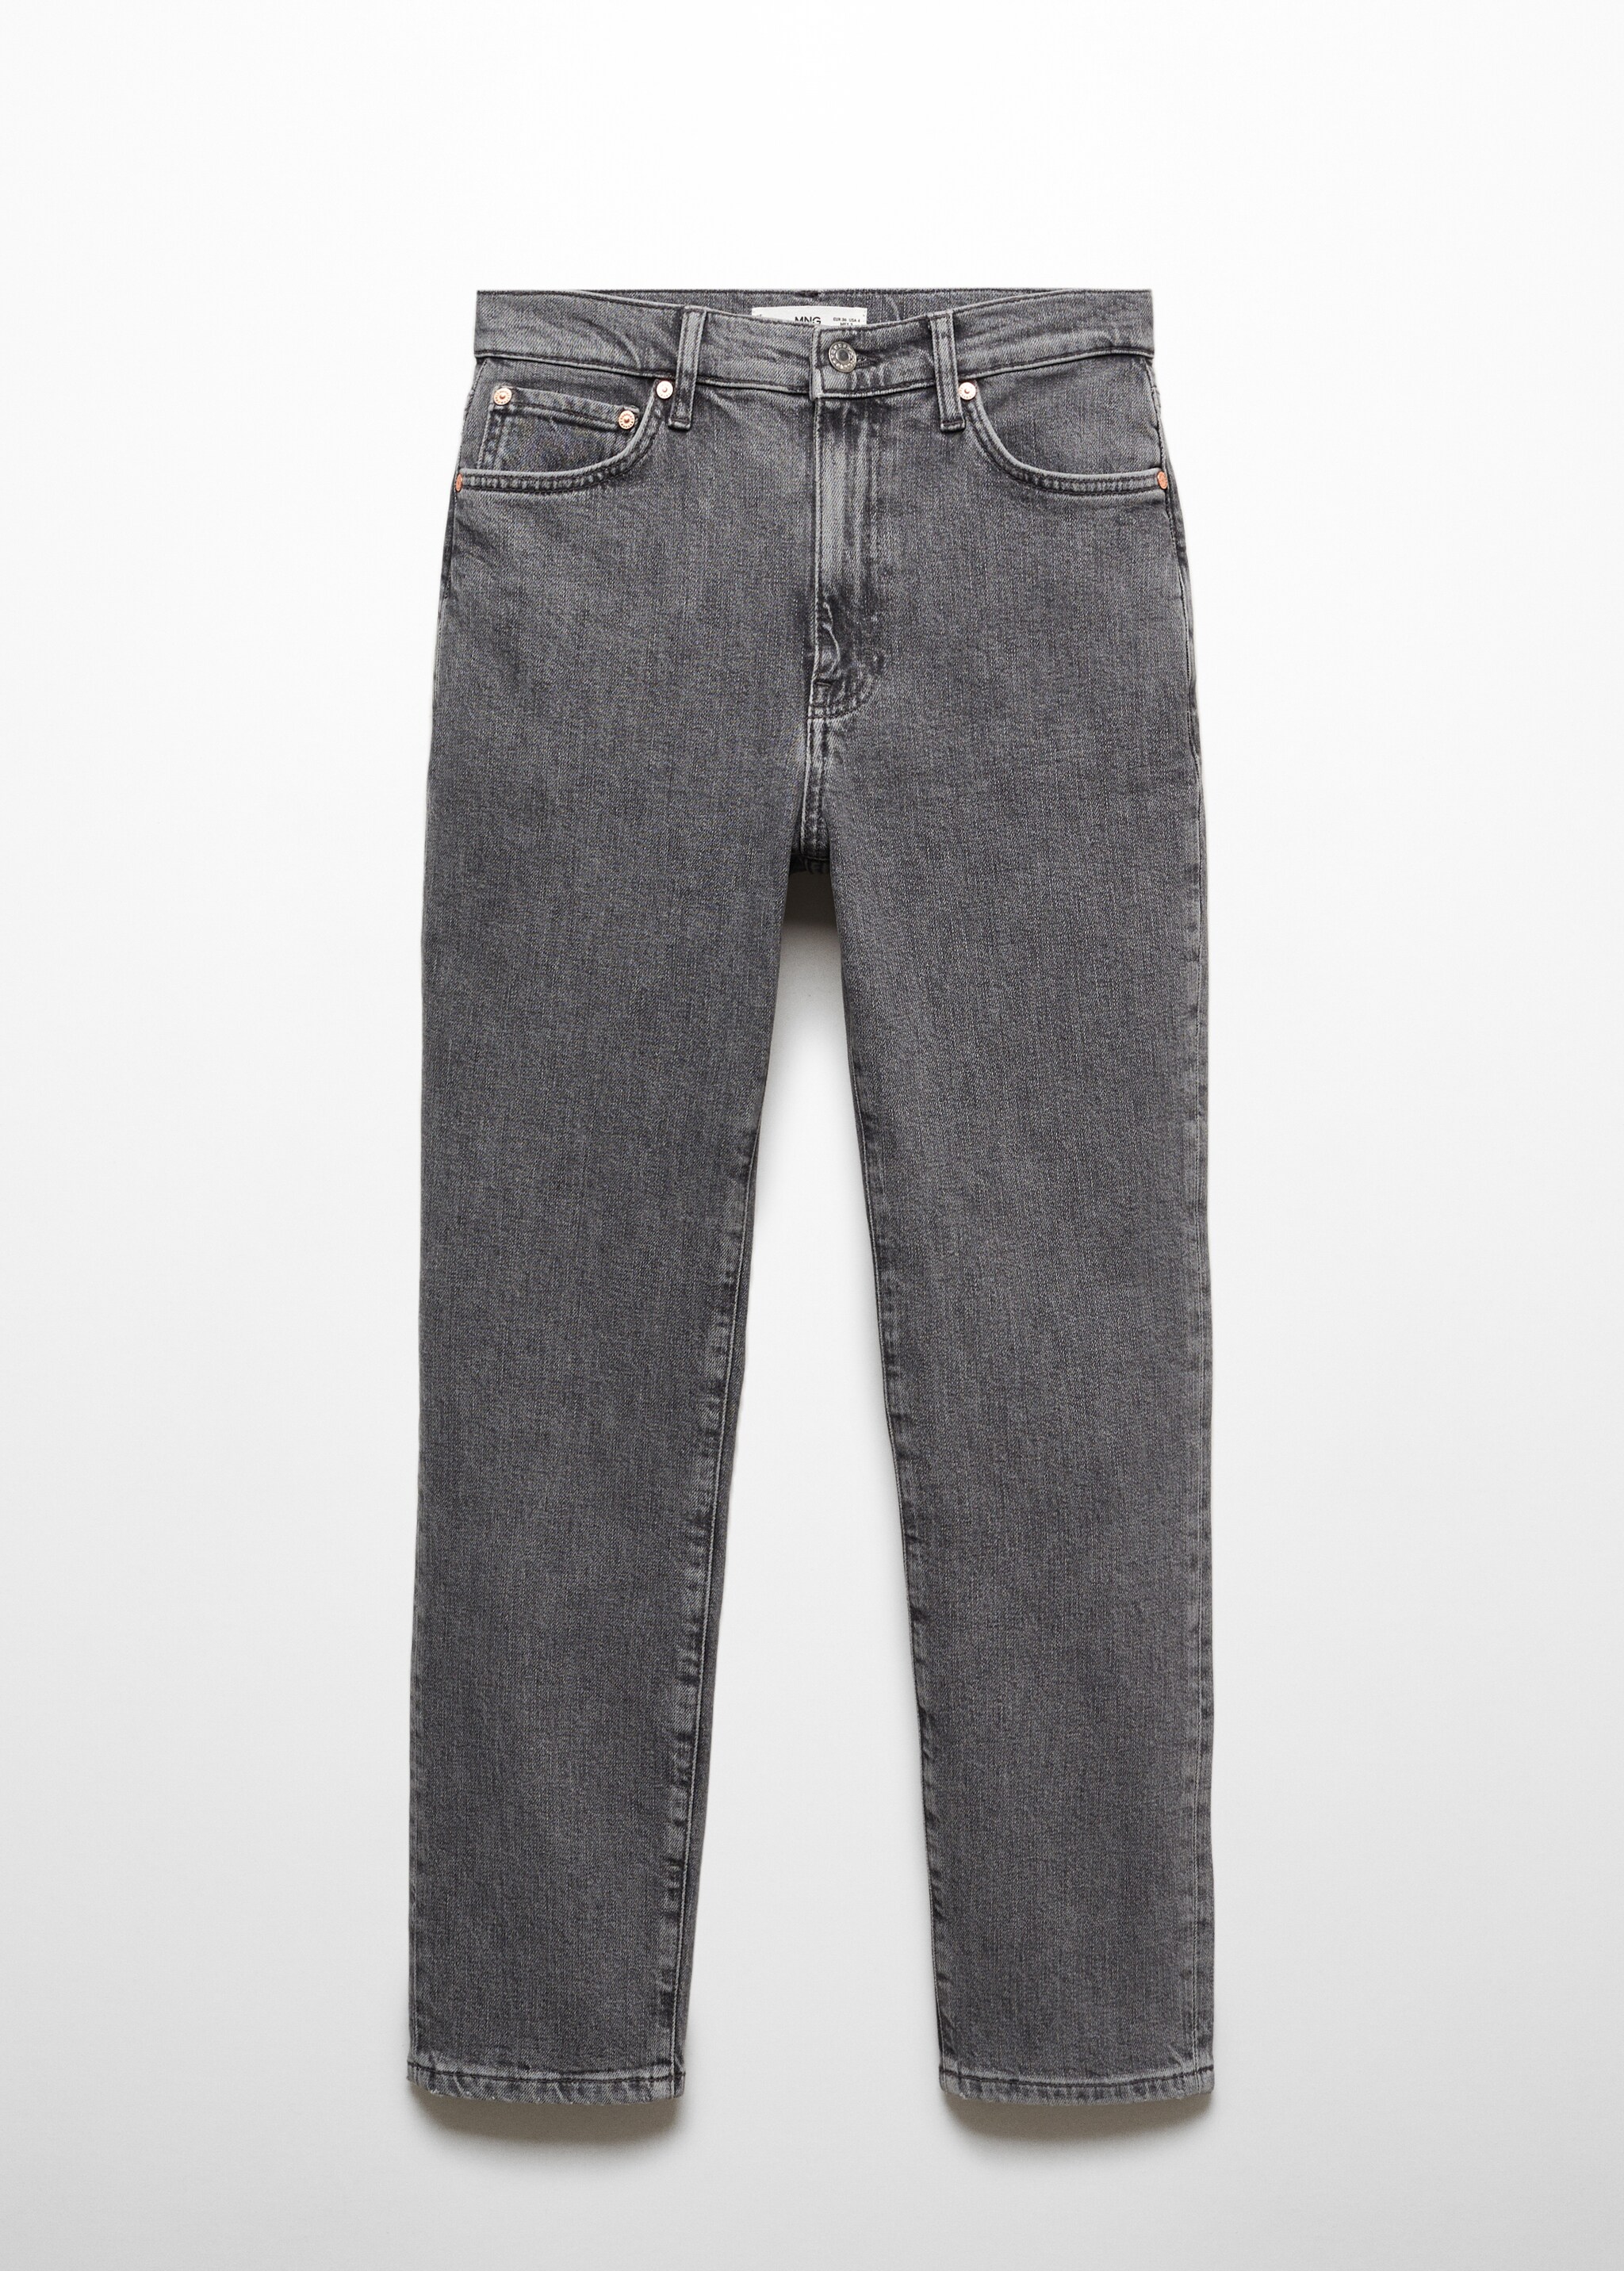 Укороченные джинсы slim Claudia - Изделие без модели